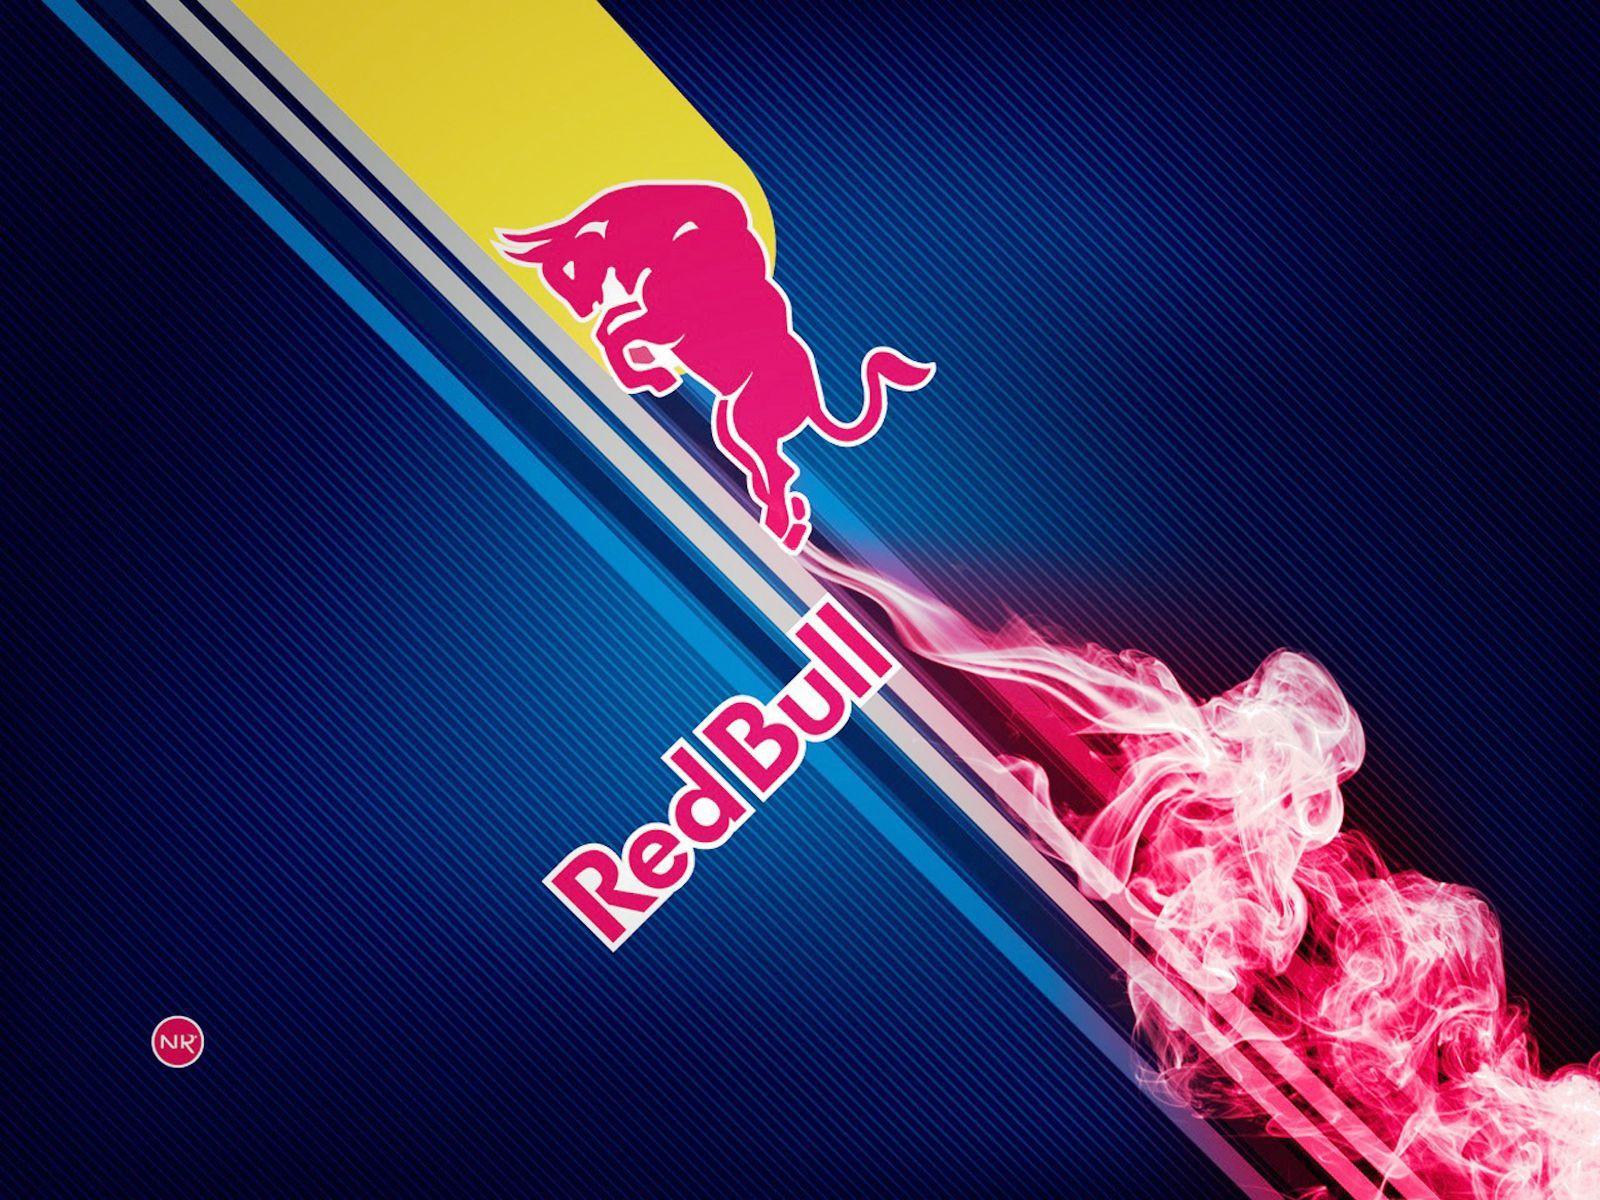 Cool Red Bull Logo - Red Bull Logo Wallpaper HD For Desktop Collection | Red Bull RTB ...